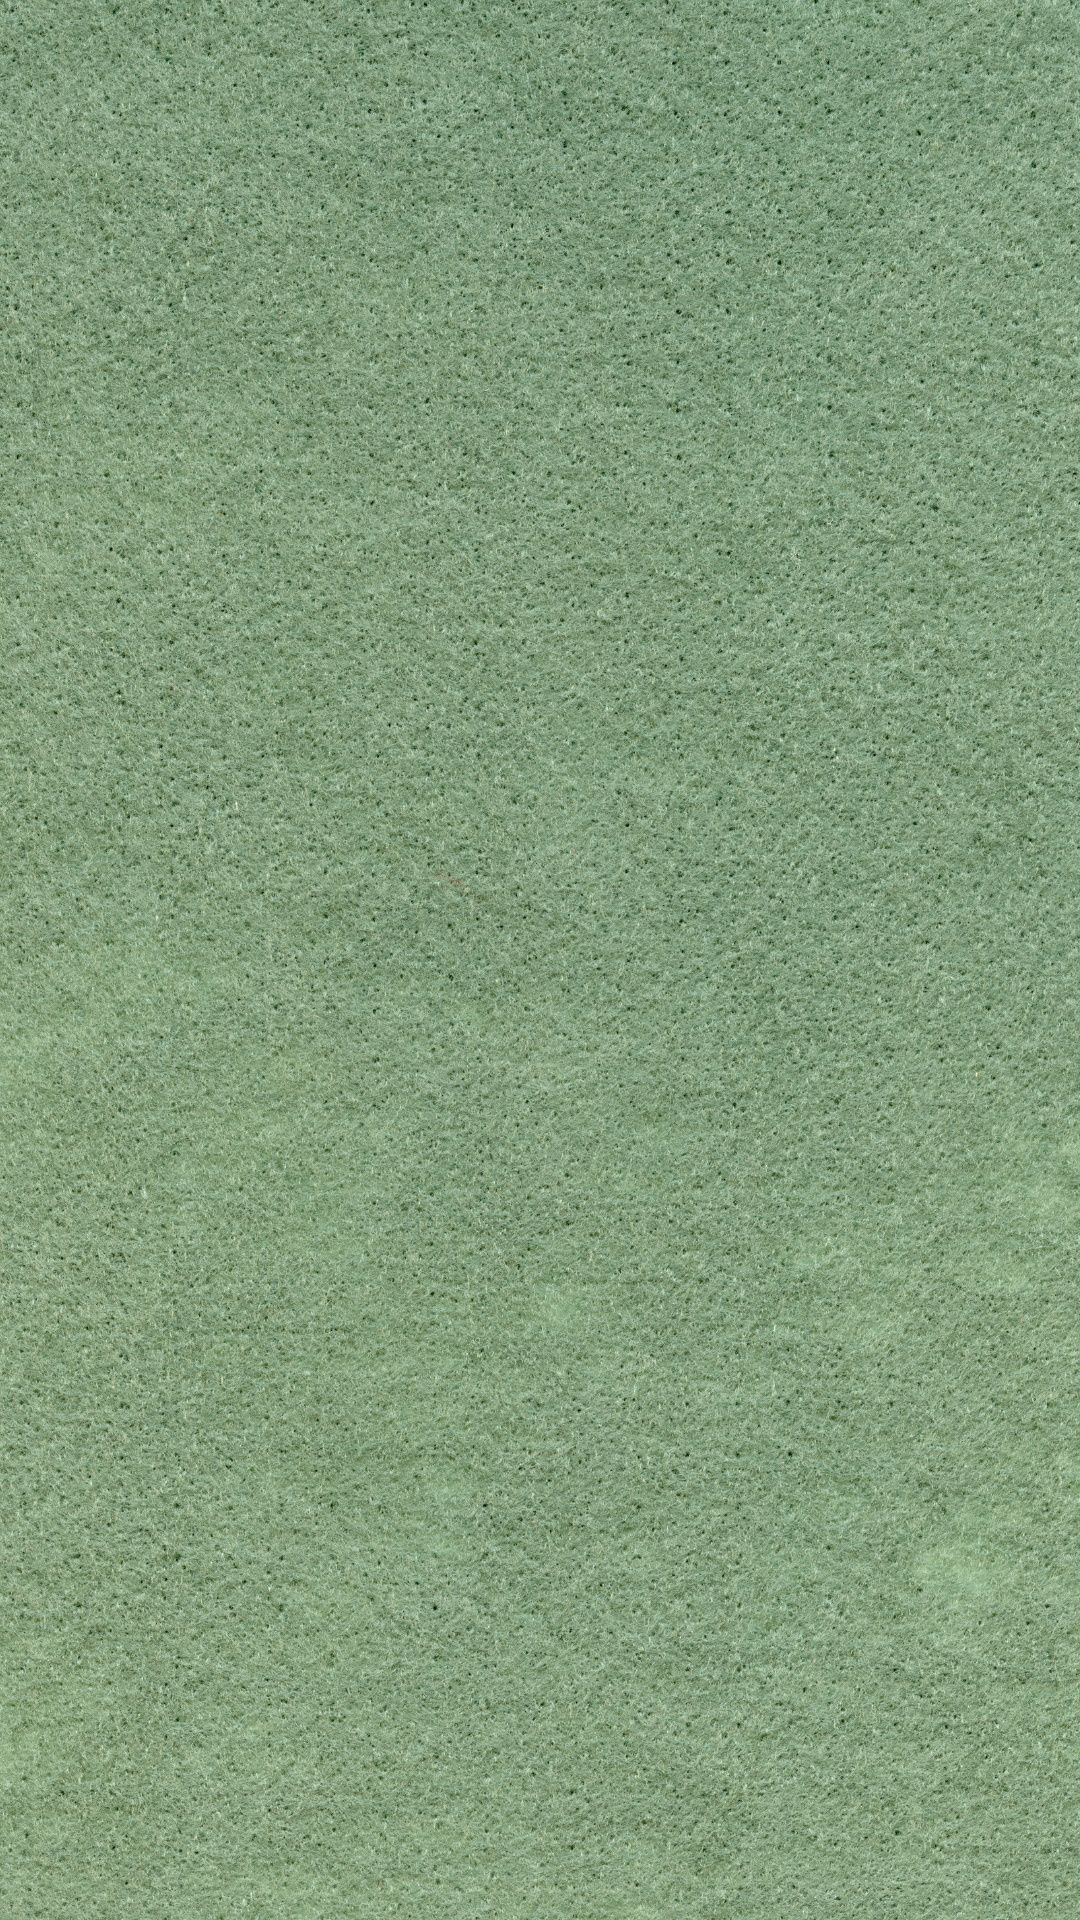 FREE Sage Green iPhone Wallpaper. Sage Green Aesthetic Wallpaper. Just Jes Lyn. iPhone wallpaper green, Green aesthetic, Sage green wallpaper